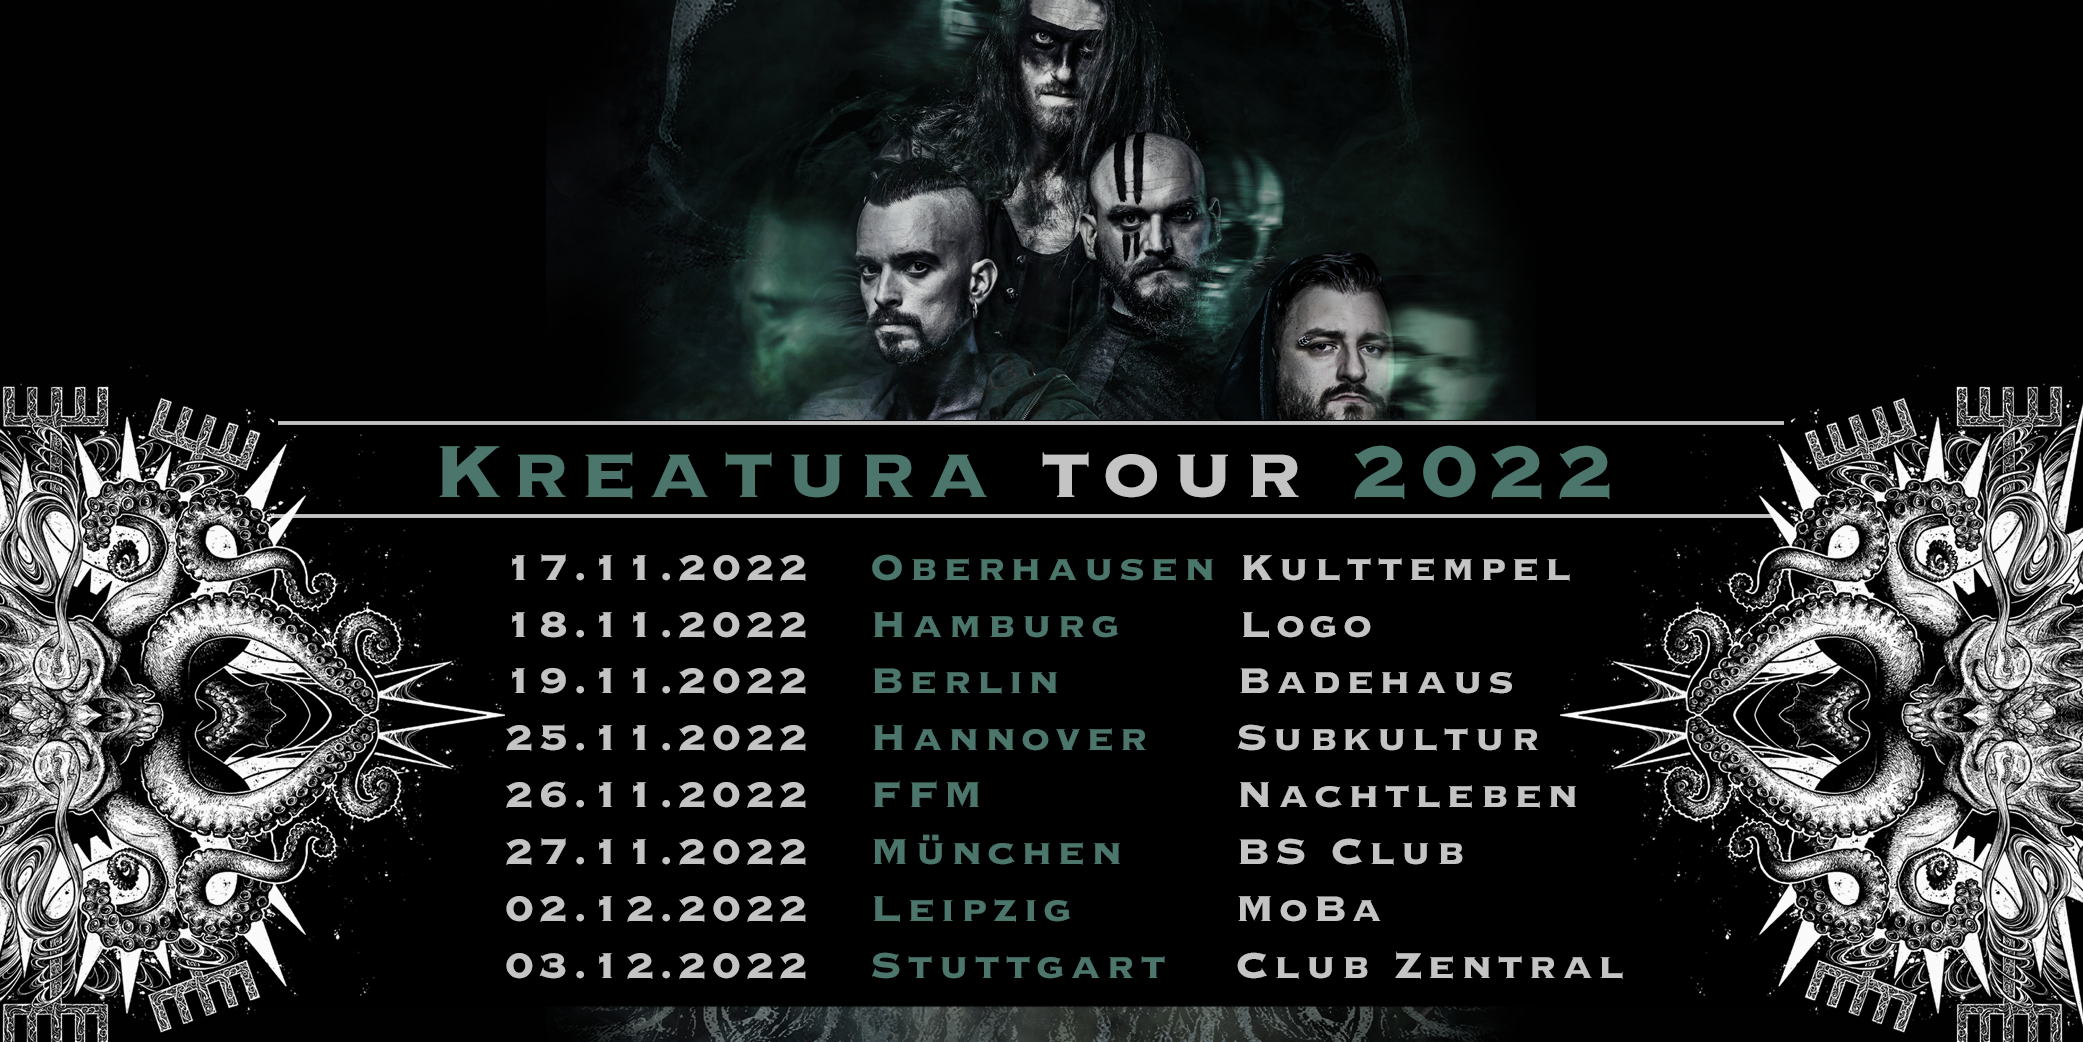 manntra-kroatische-metalband-auf-kreatura-headlinertour-durch-deutschland